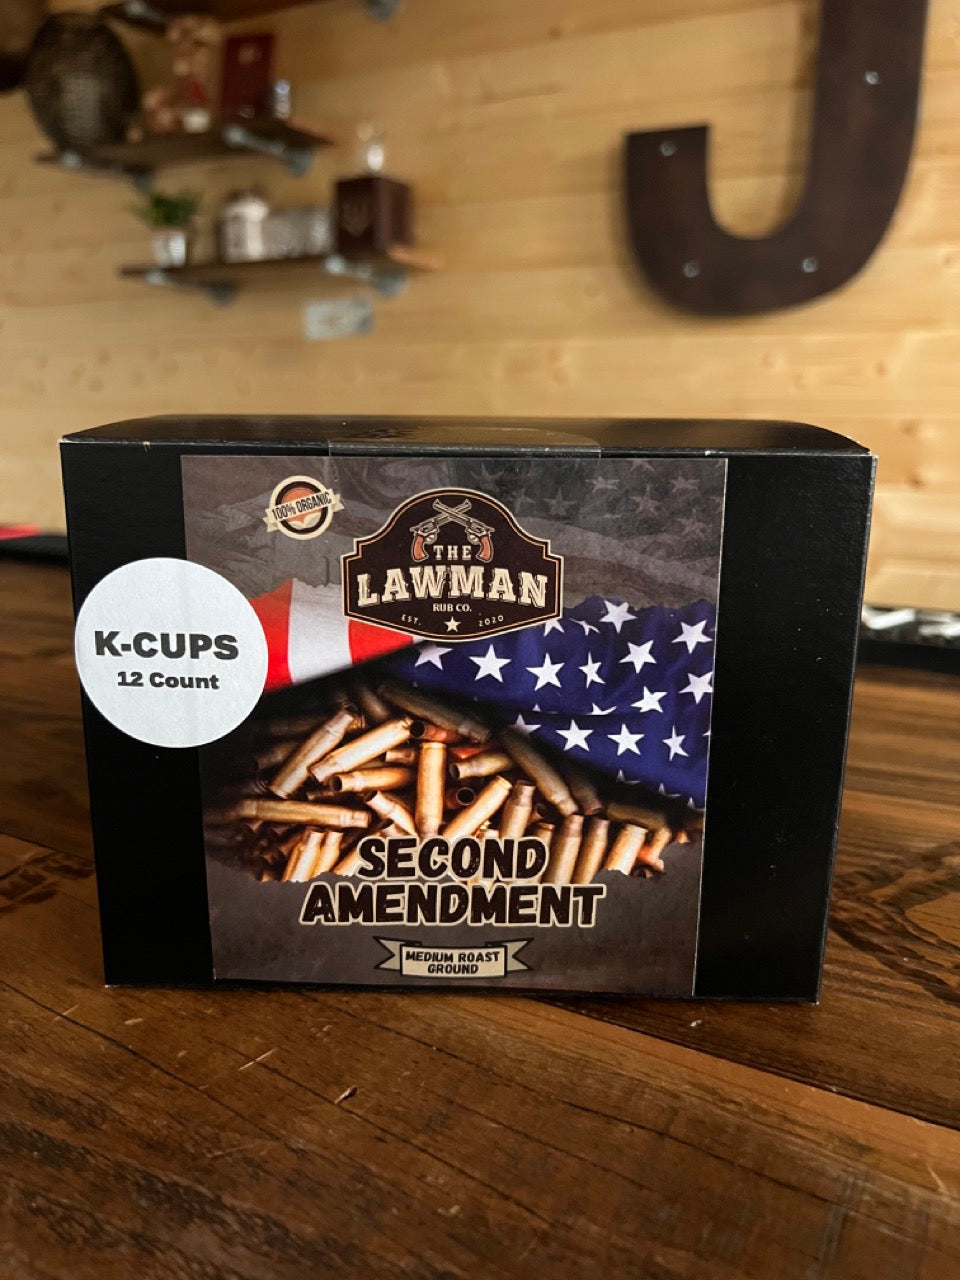 Second Amendment medium roast K-cup 12 count box